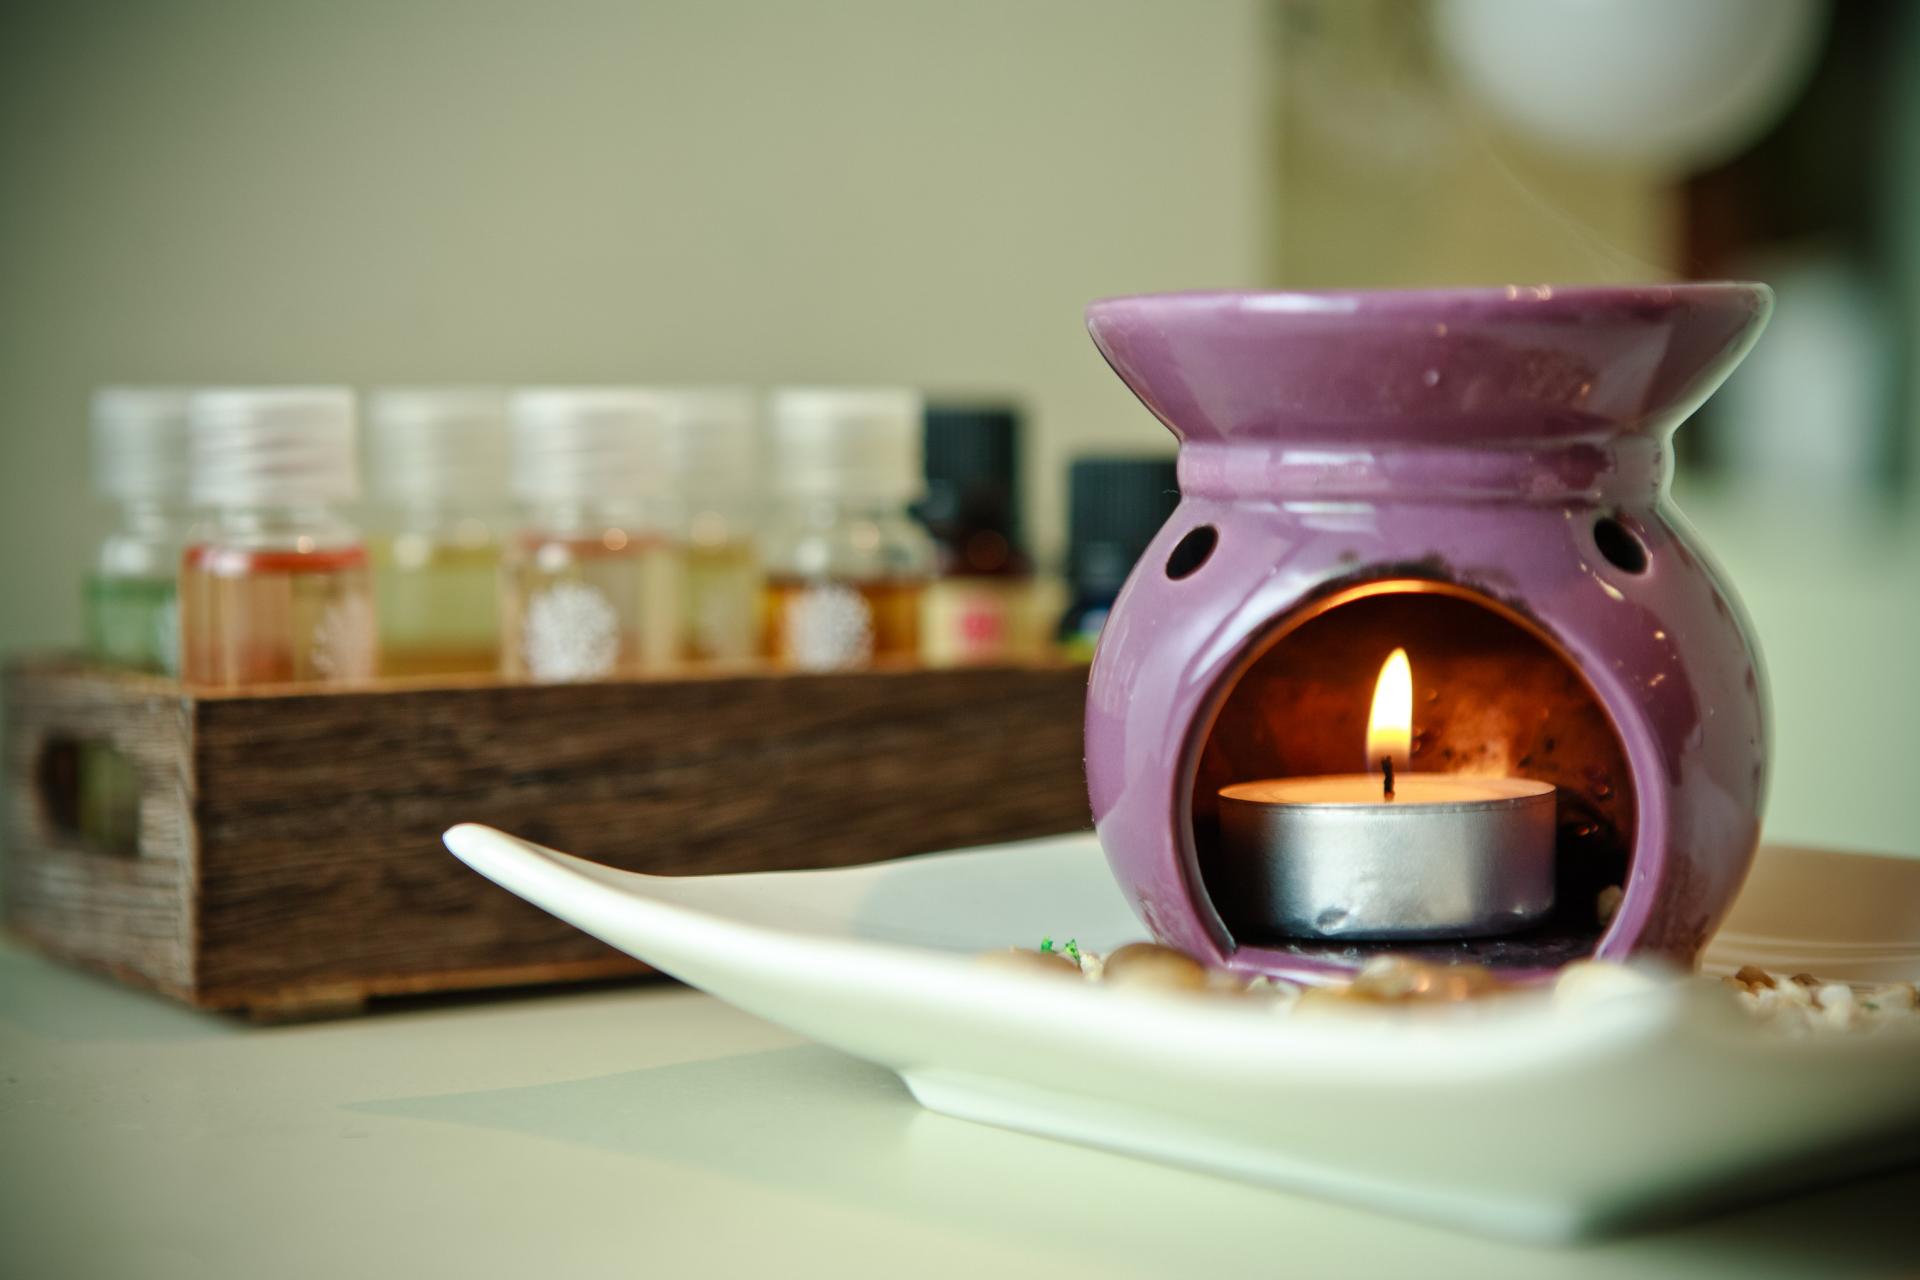 Чем пахнет ваш дом? Интересные варианты арома-терапии для жилища